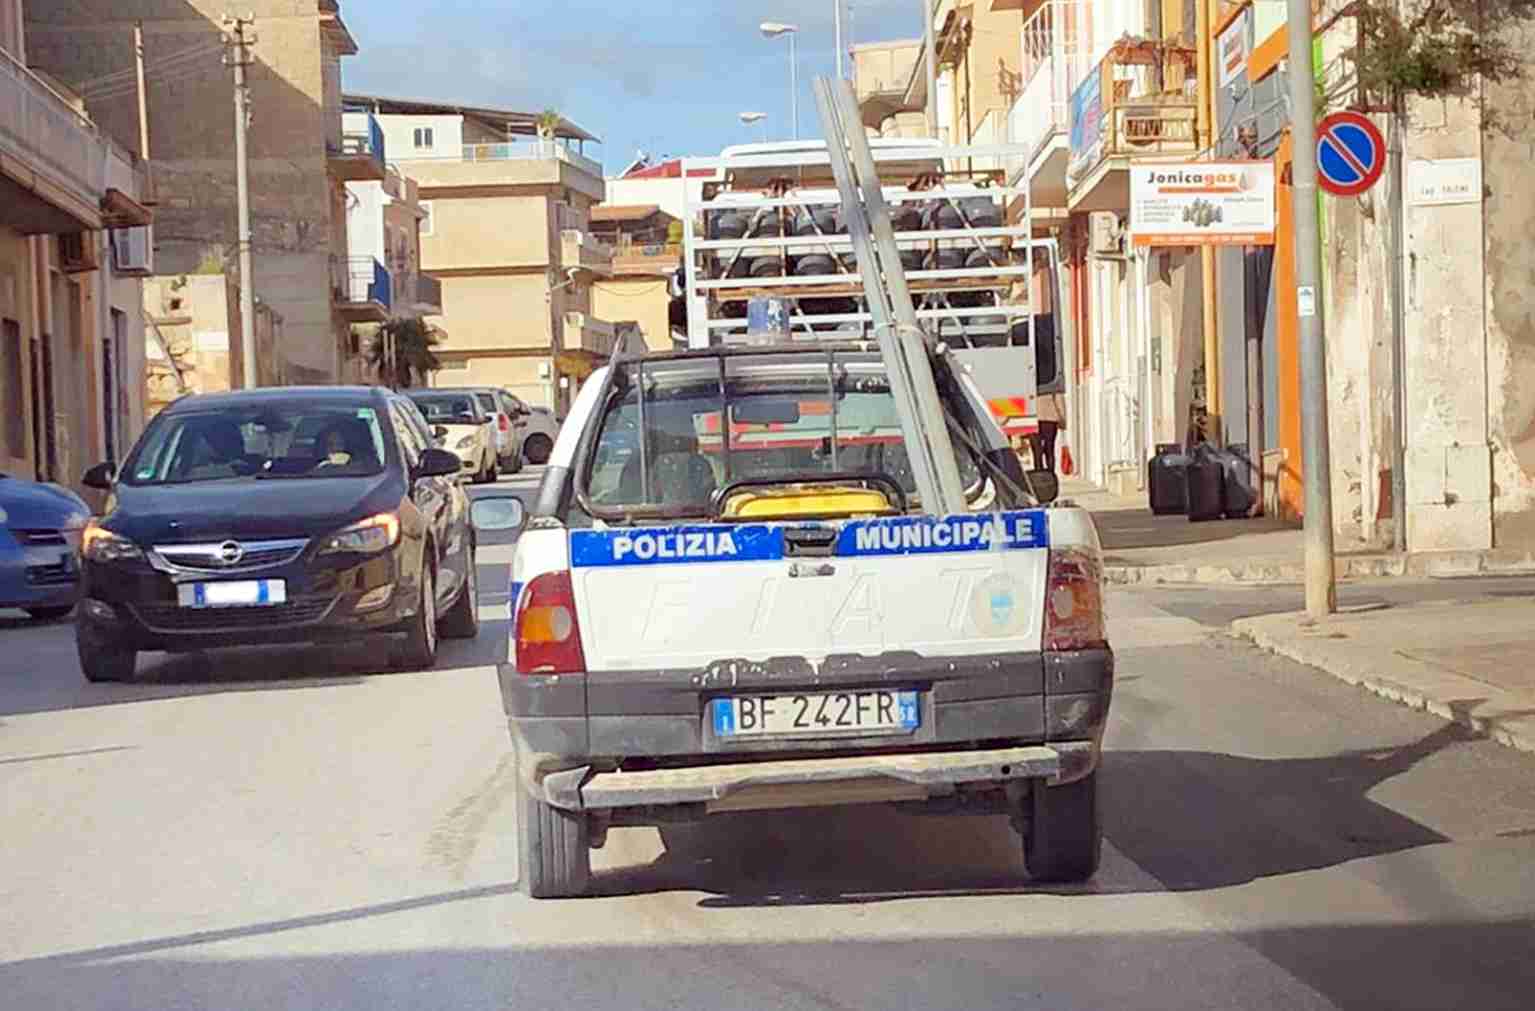 Auto del Comune per le strade di Rosolini ma con assicurazione scaduta, il vice comandante: “Ha la copertura”